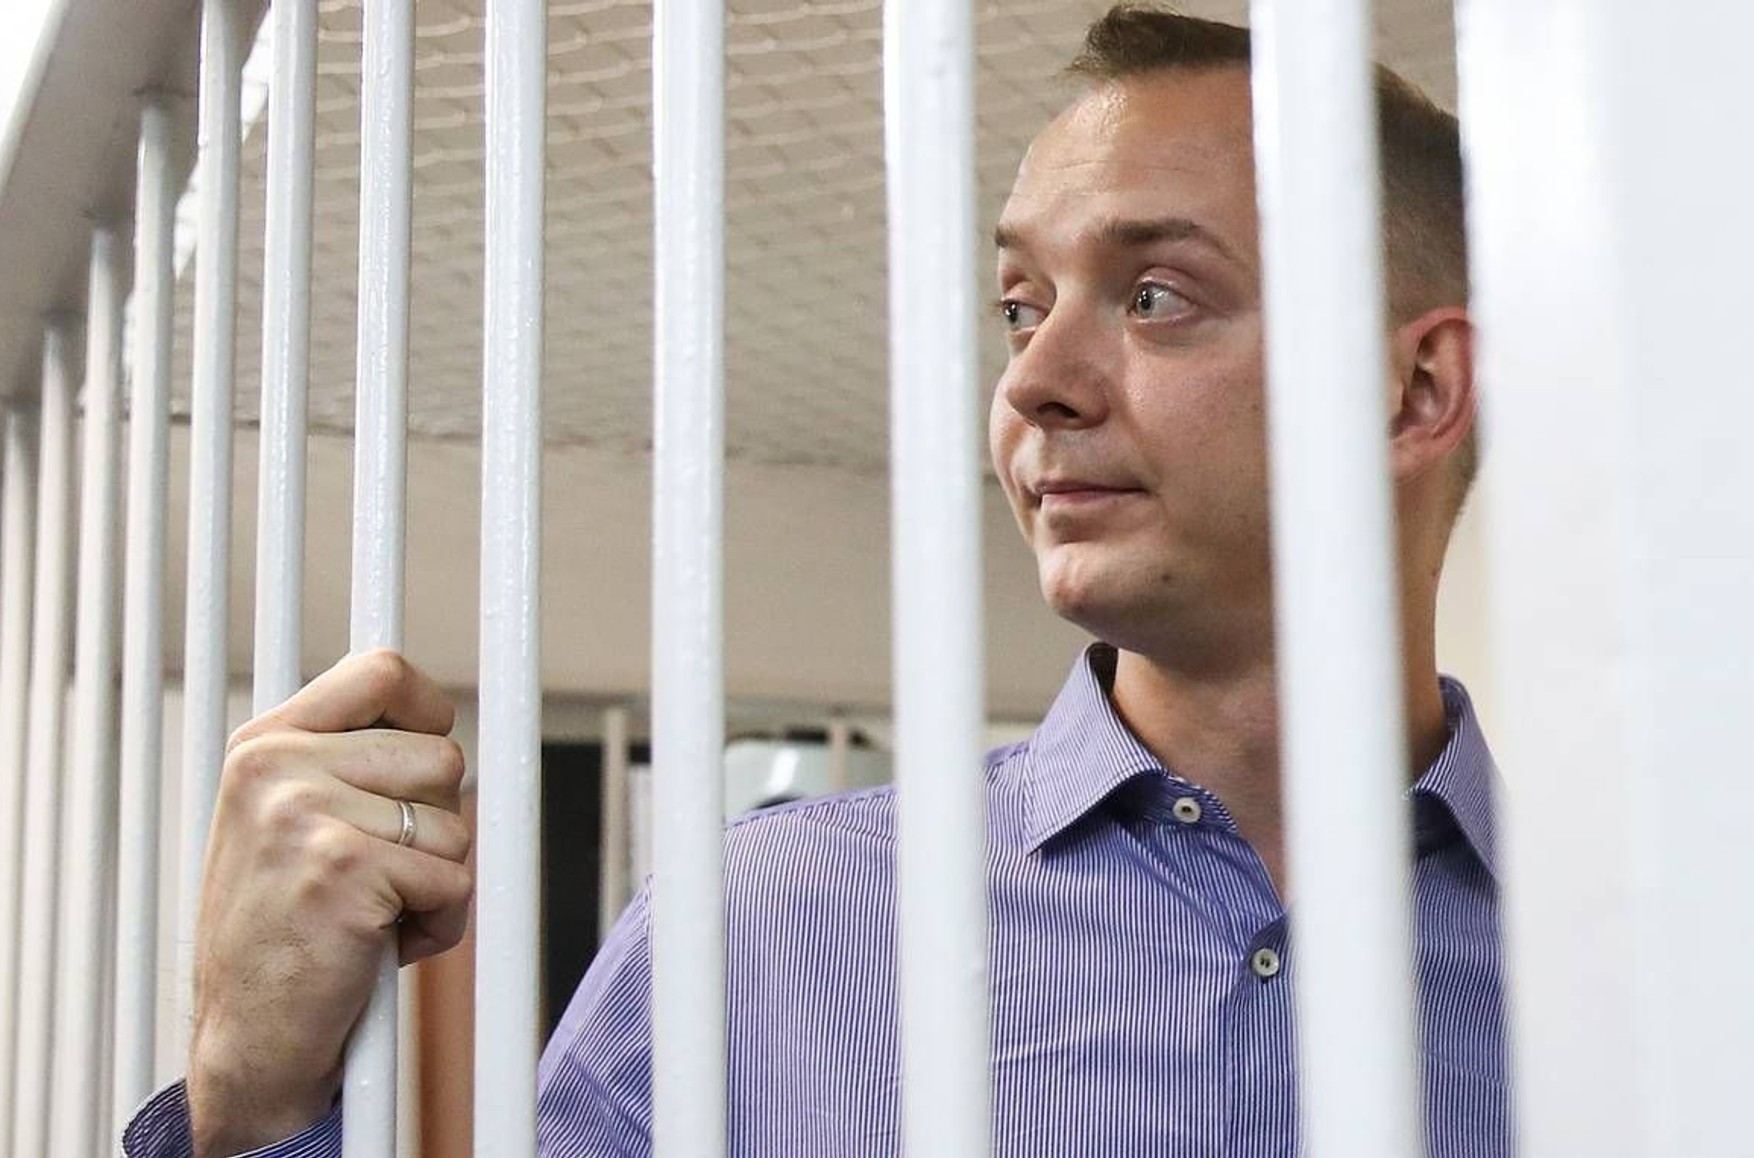 Песков заявил, что по закону Иван Сафронов должен признать вину, чтобы просить о помиловании. Это не так